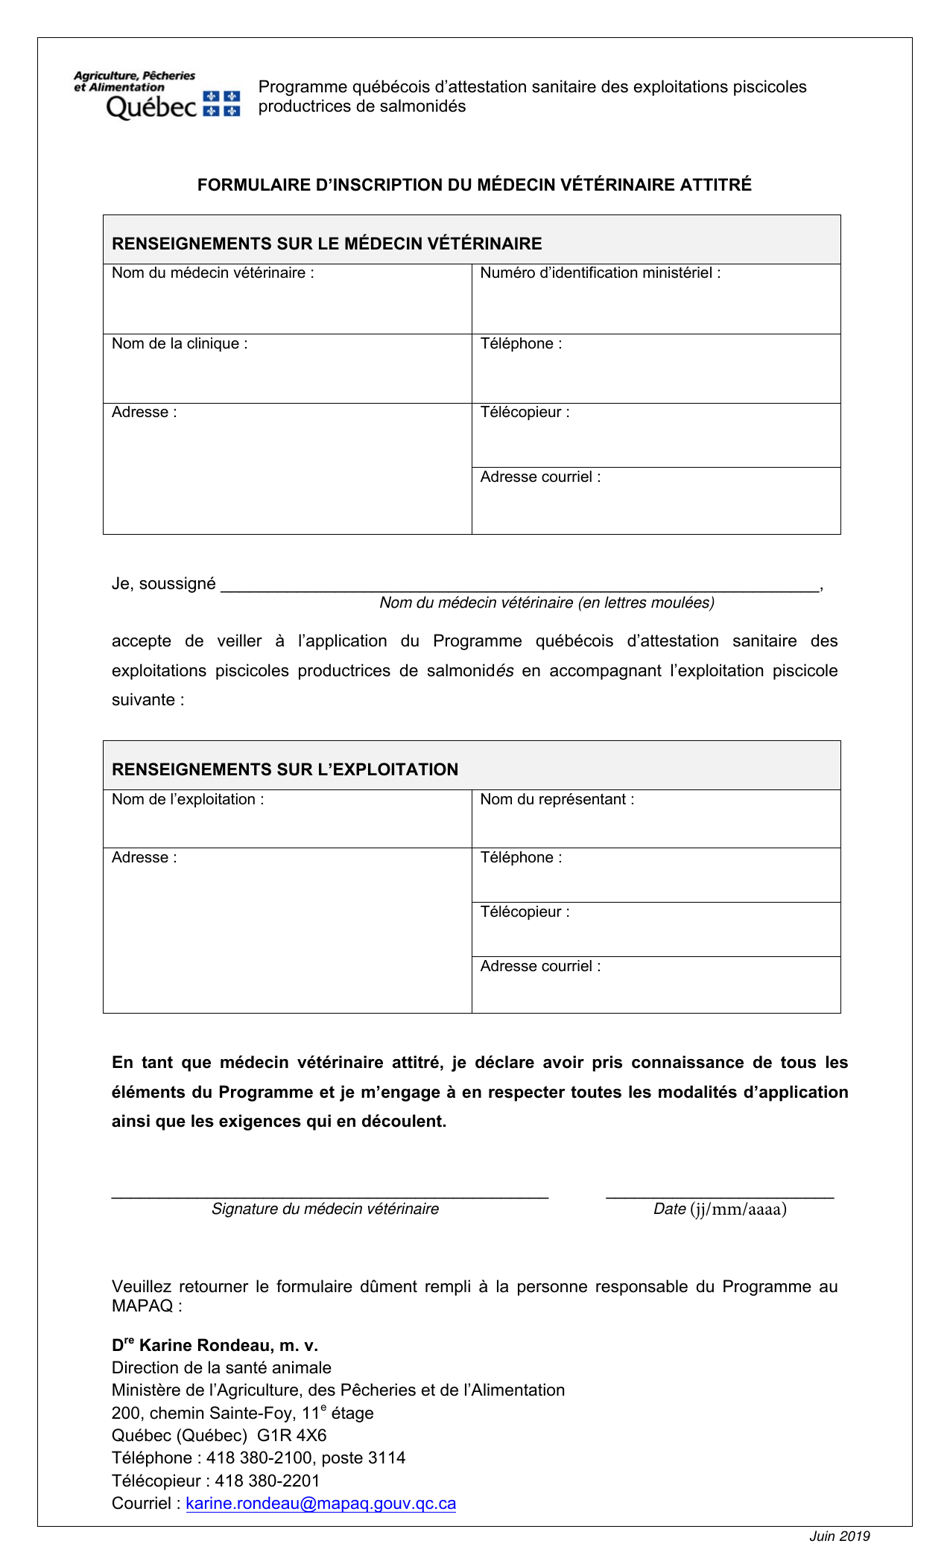 Formulaire Dinscription Du Medecin Veterinaire Attitre - Quebec, Canada (French), Page 1